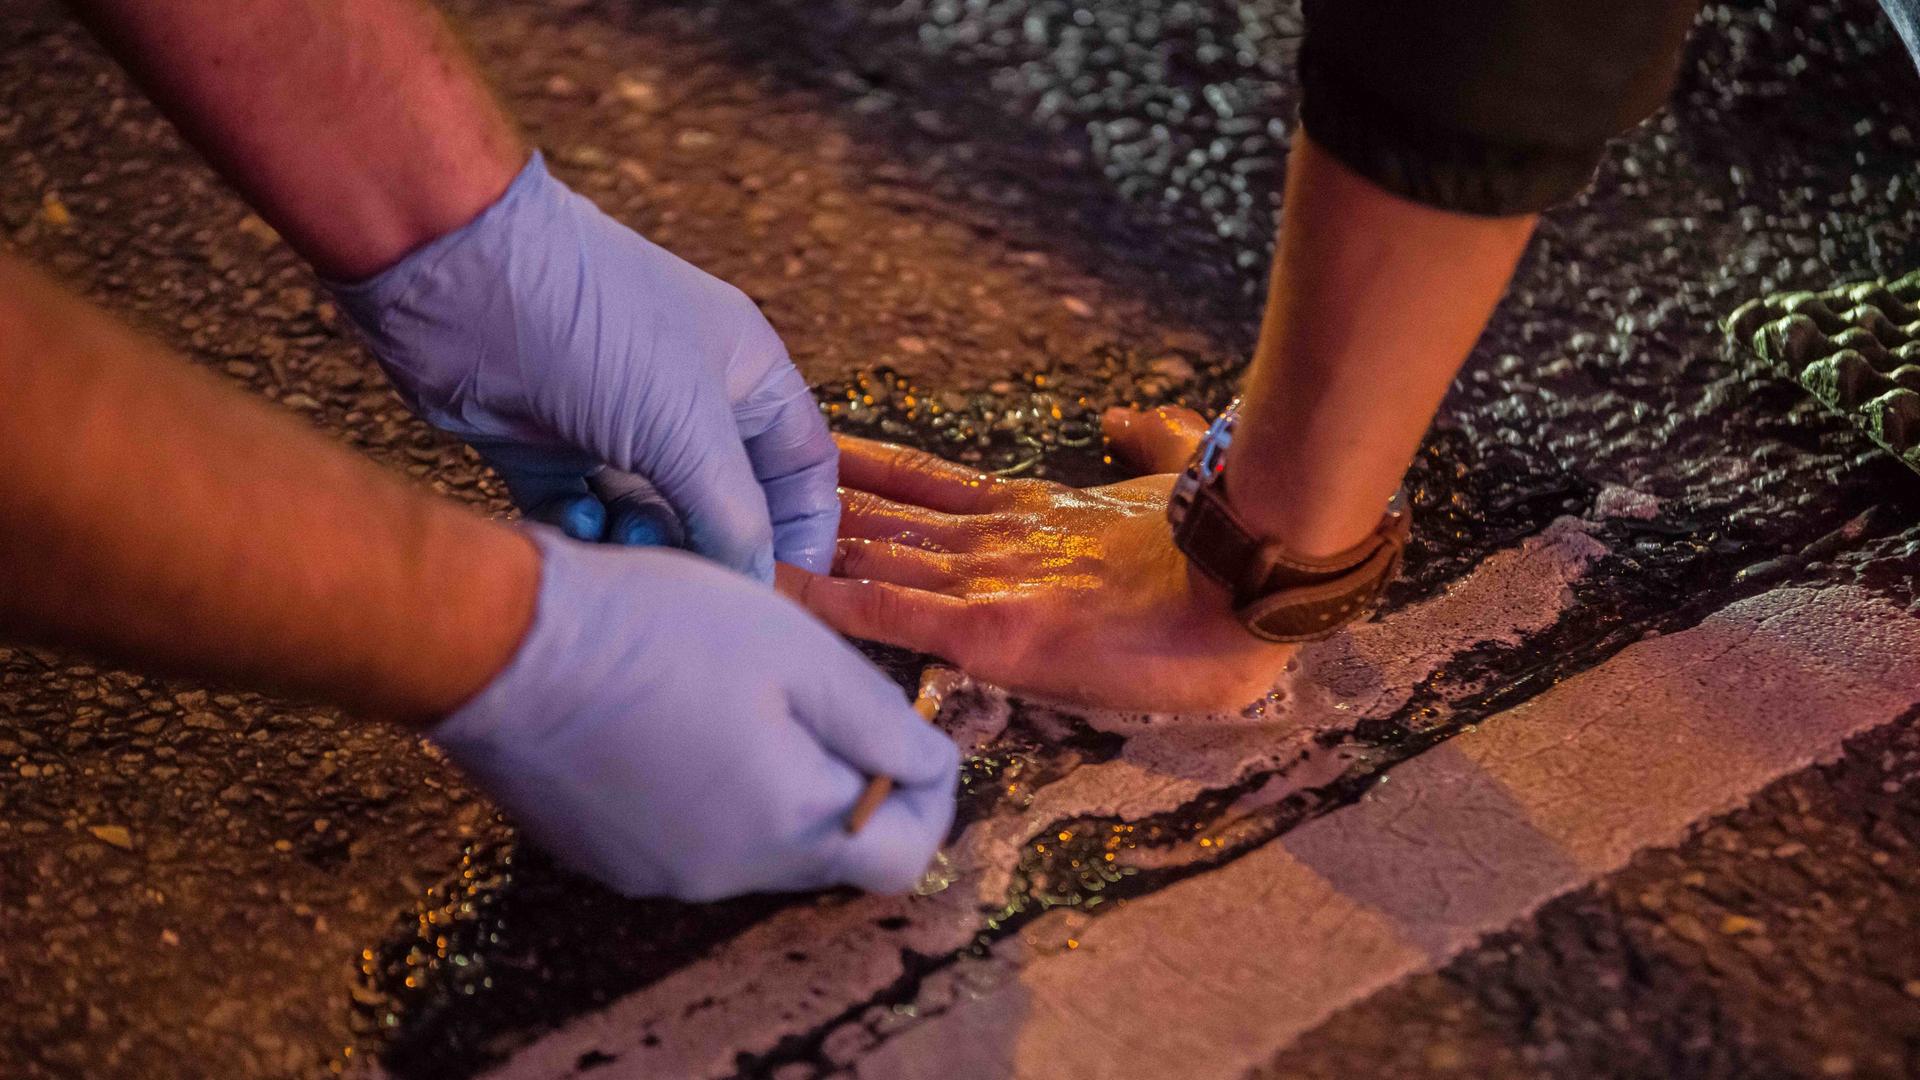 Protest der "Letzten Generation" am 7. November 2022 in München: Ein junger Mensch hat seine Hand auf der Fahrbahn festgeklebt, eine Person mit Gummihandschuhen versucht, die Klebeverbindung zu lösen.